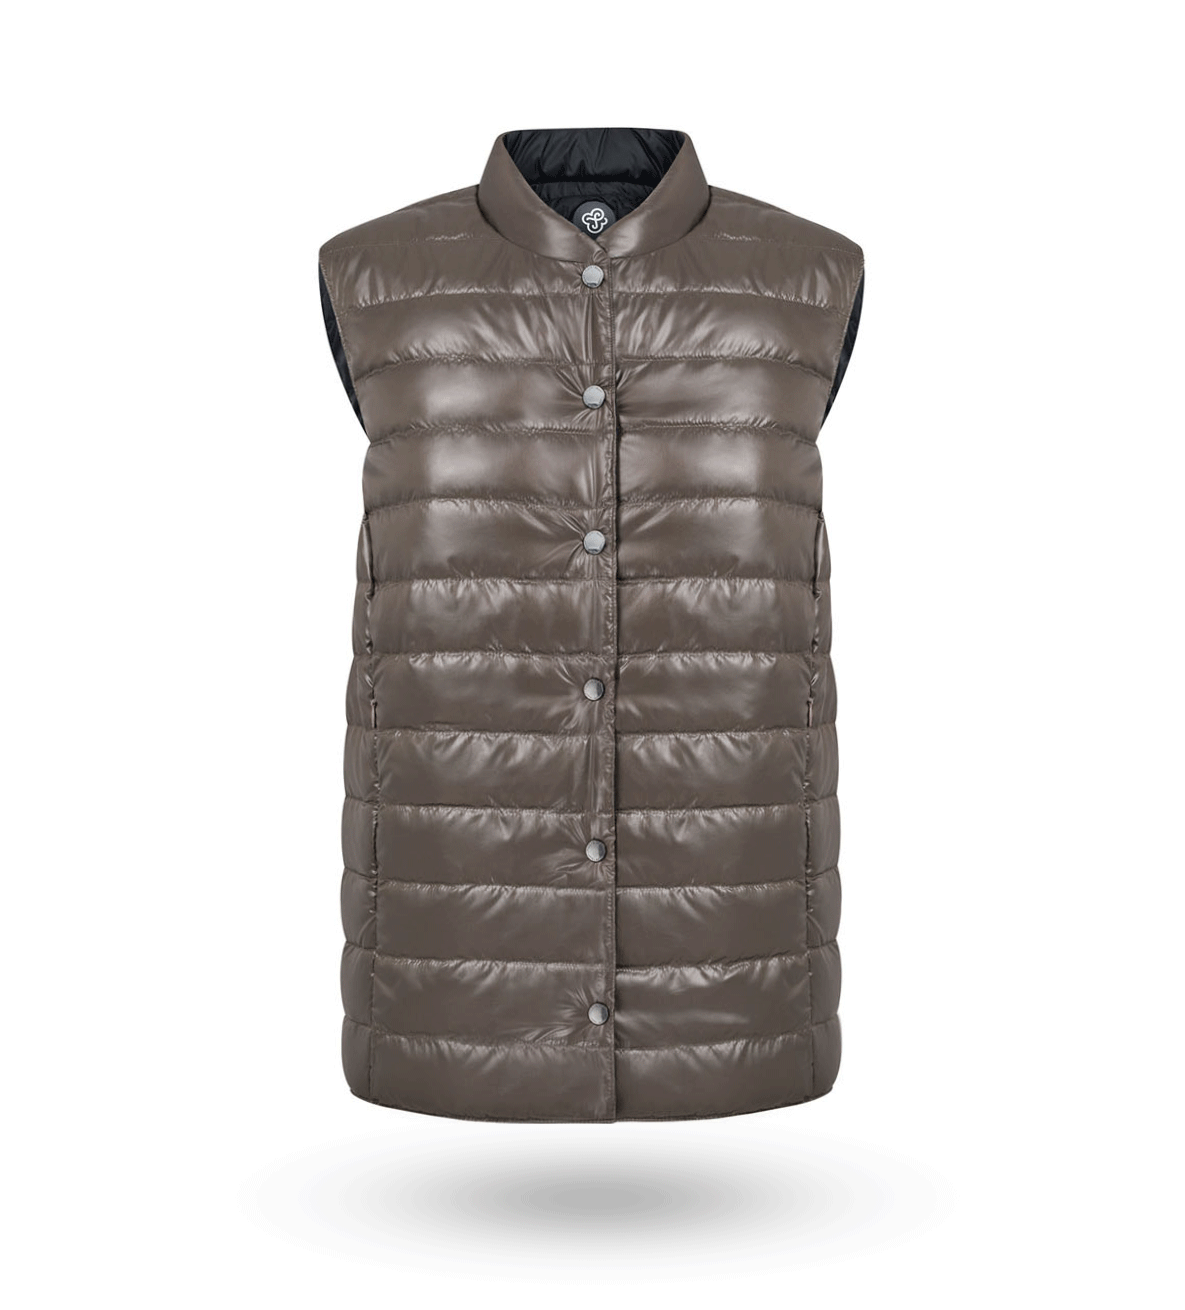 Reversible vest Black&Marron glace